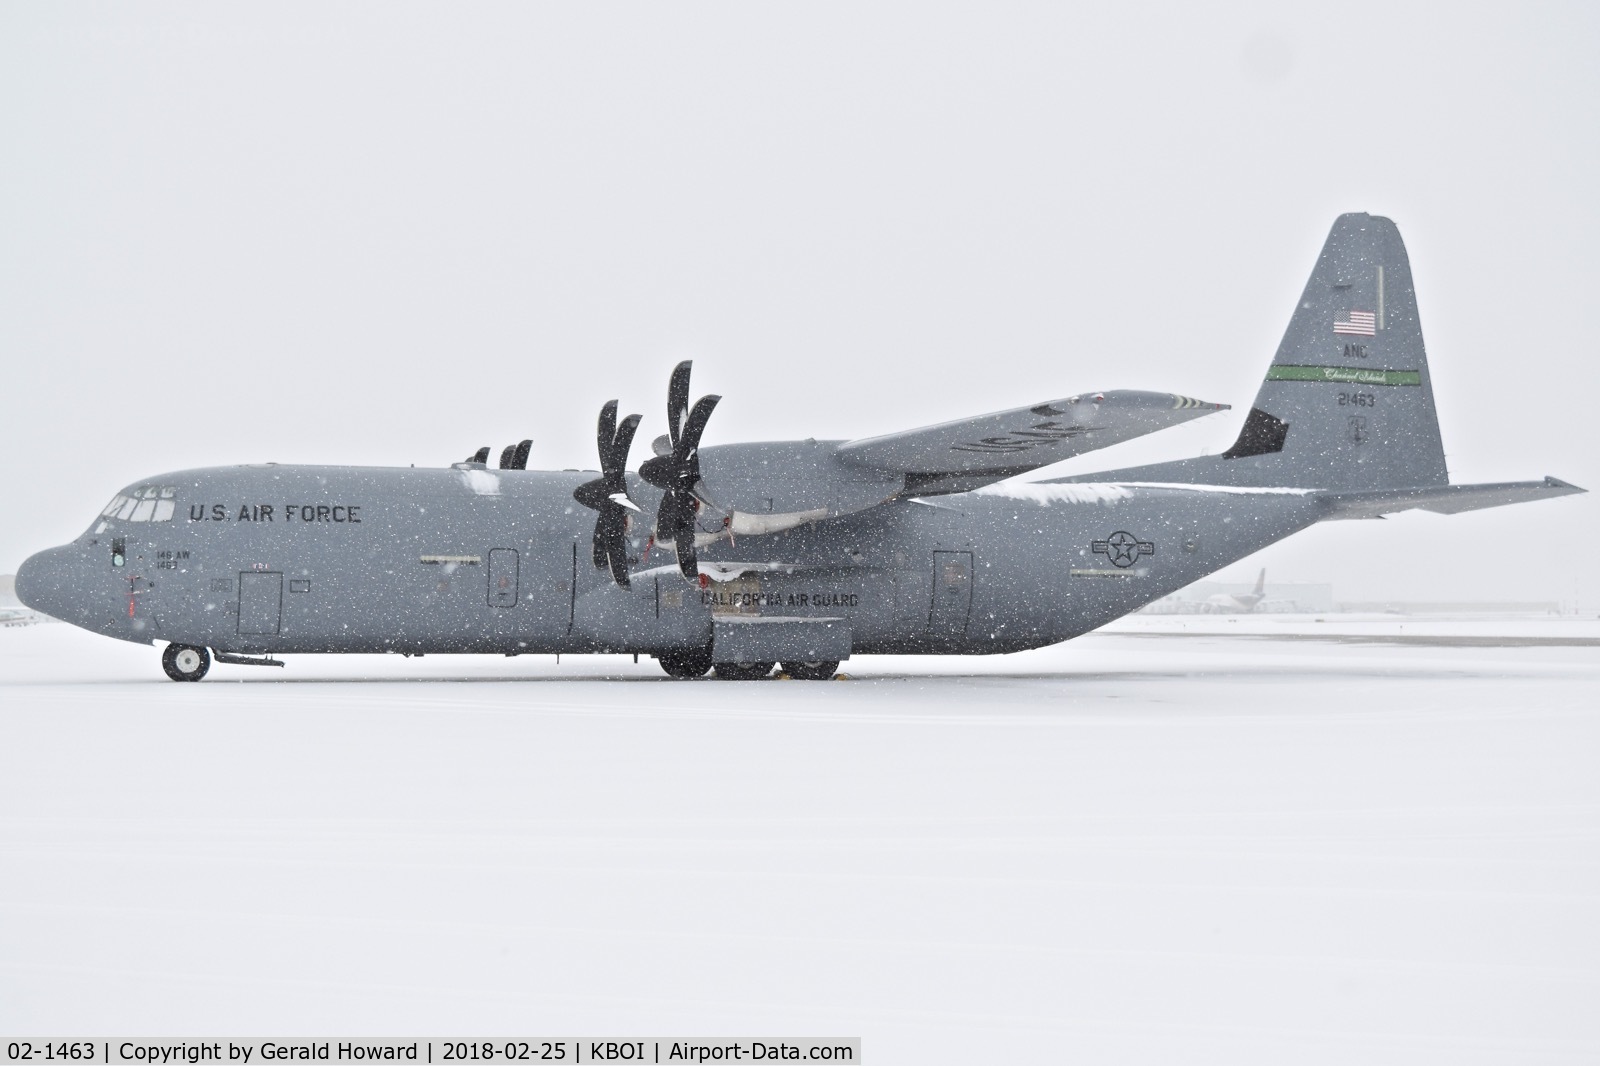 02-1463, 2003 Lockheed Martin C-130J-30 Super Hercules C/N 382-5551, No flying today. 146th Air Wing, CA ANG.